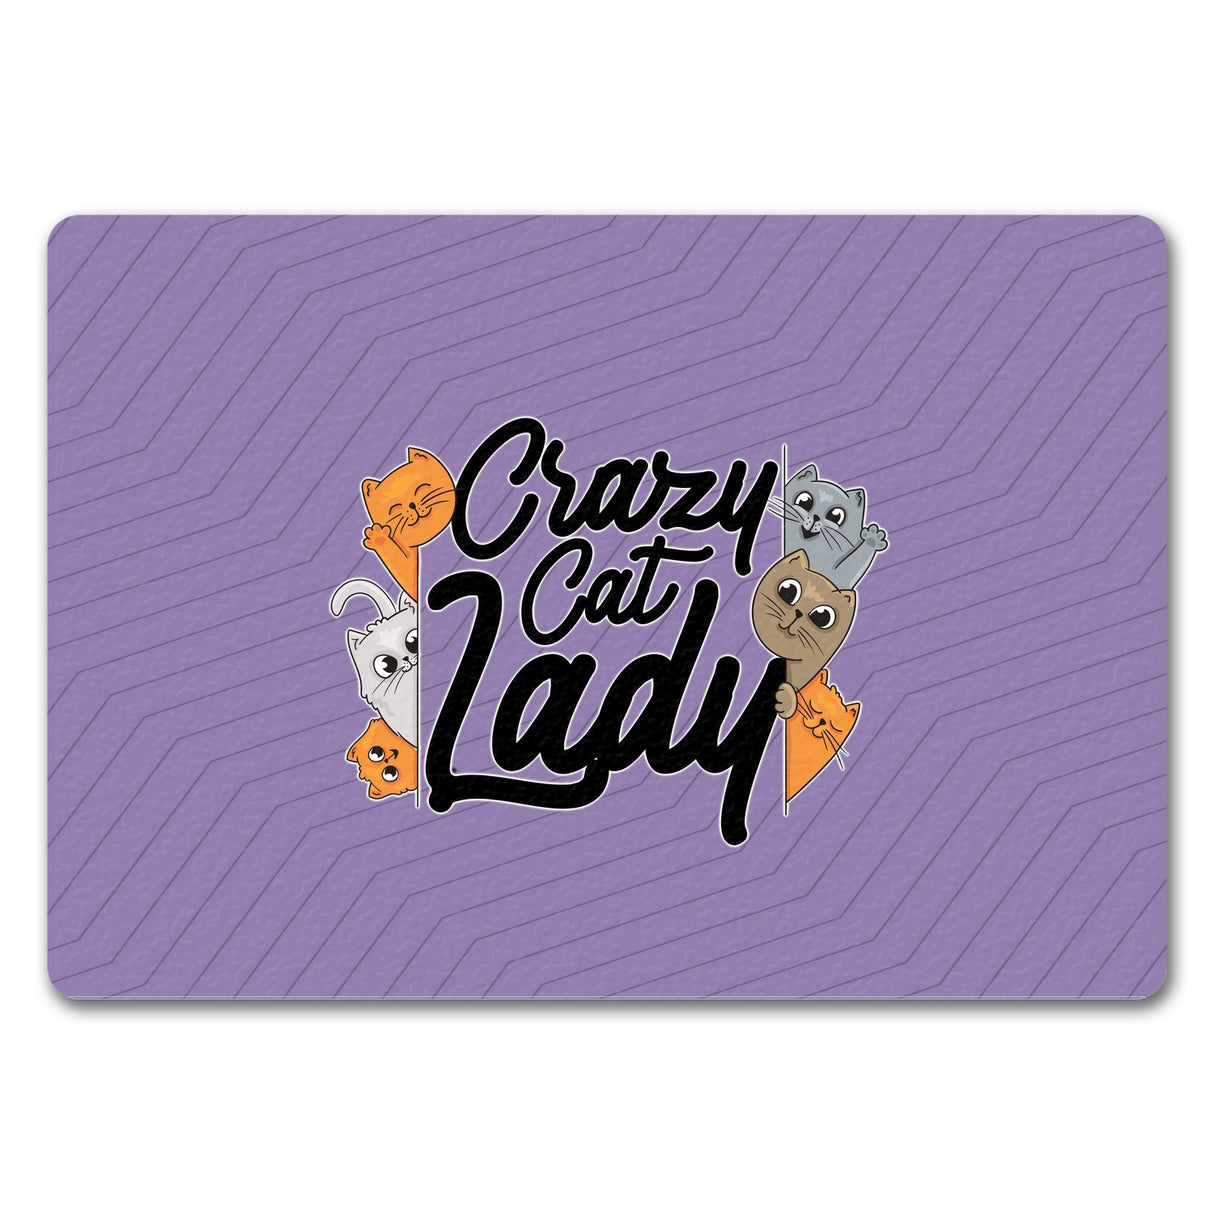 Katzen Fußmatte in 35x50 cm Crazy Cat Lady für Katzenliebhaber